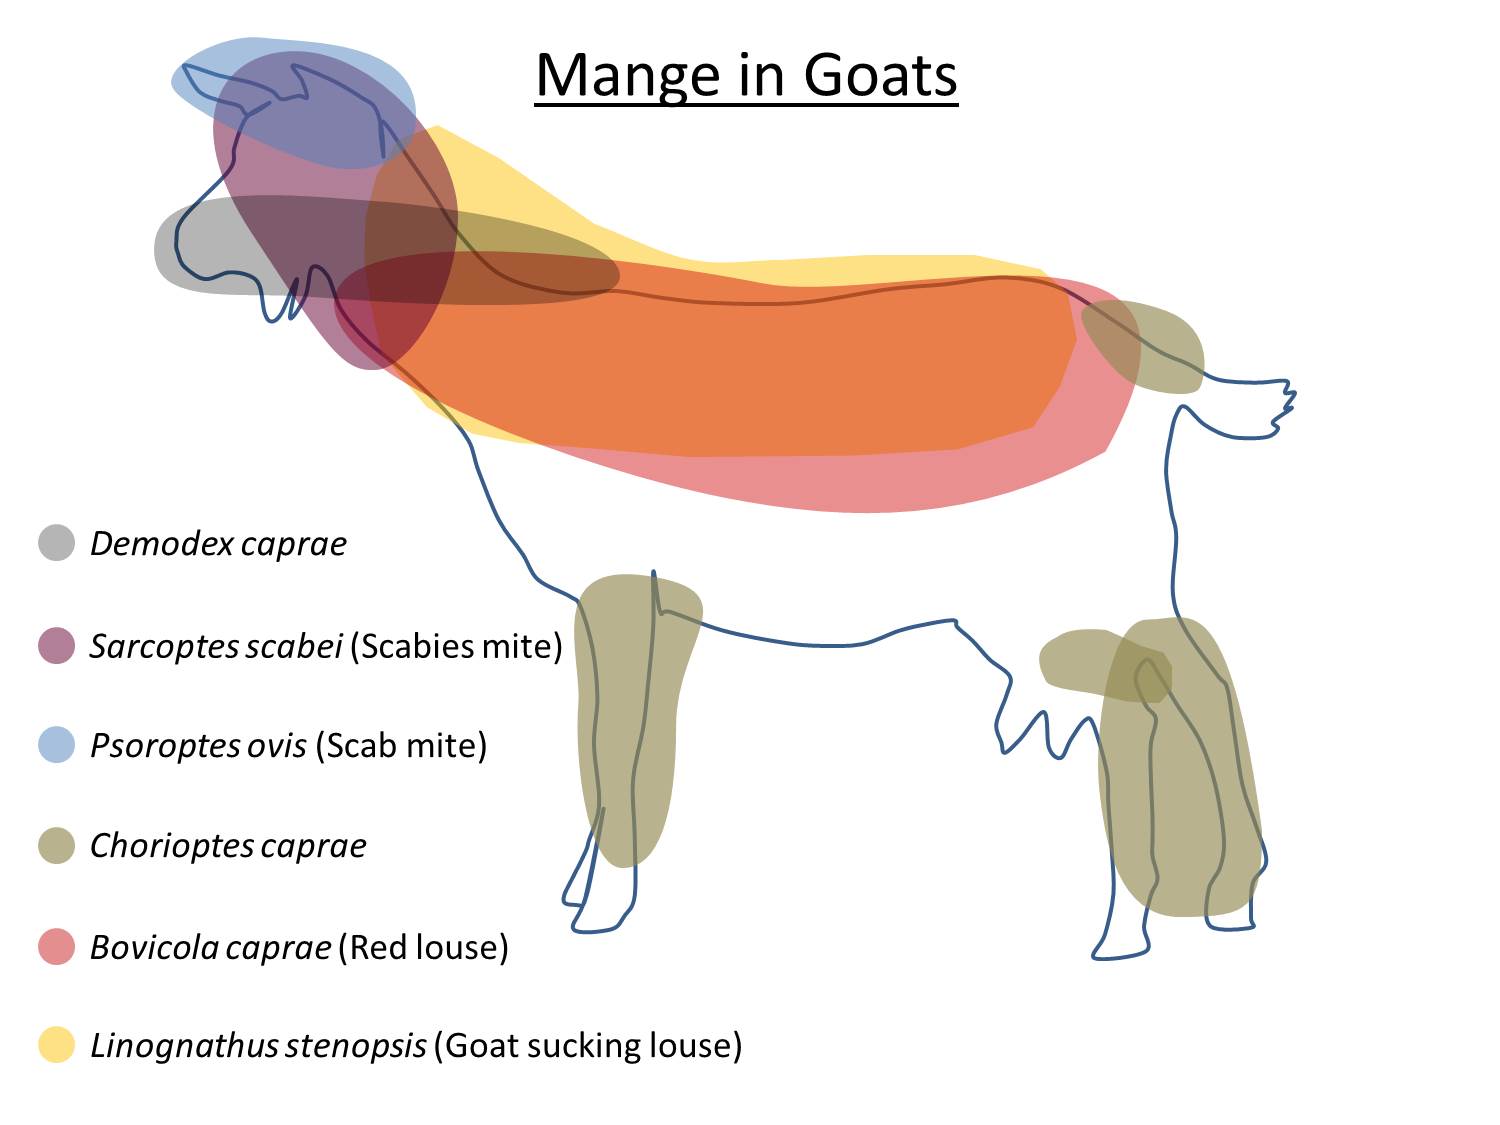 Mange in Goats